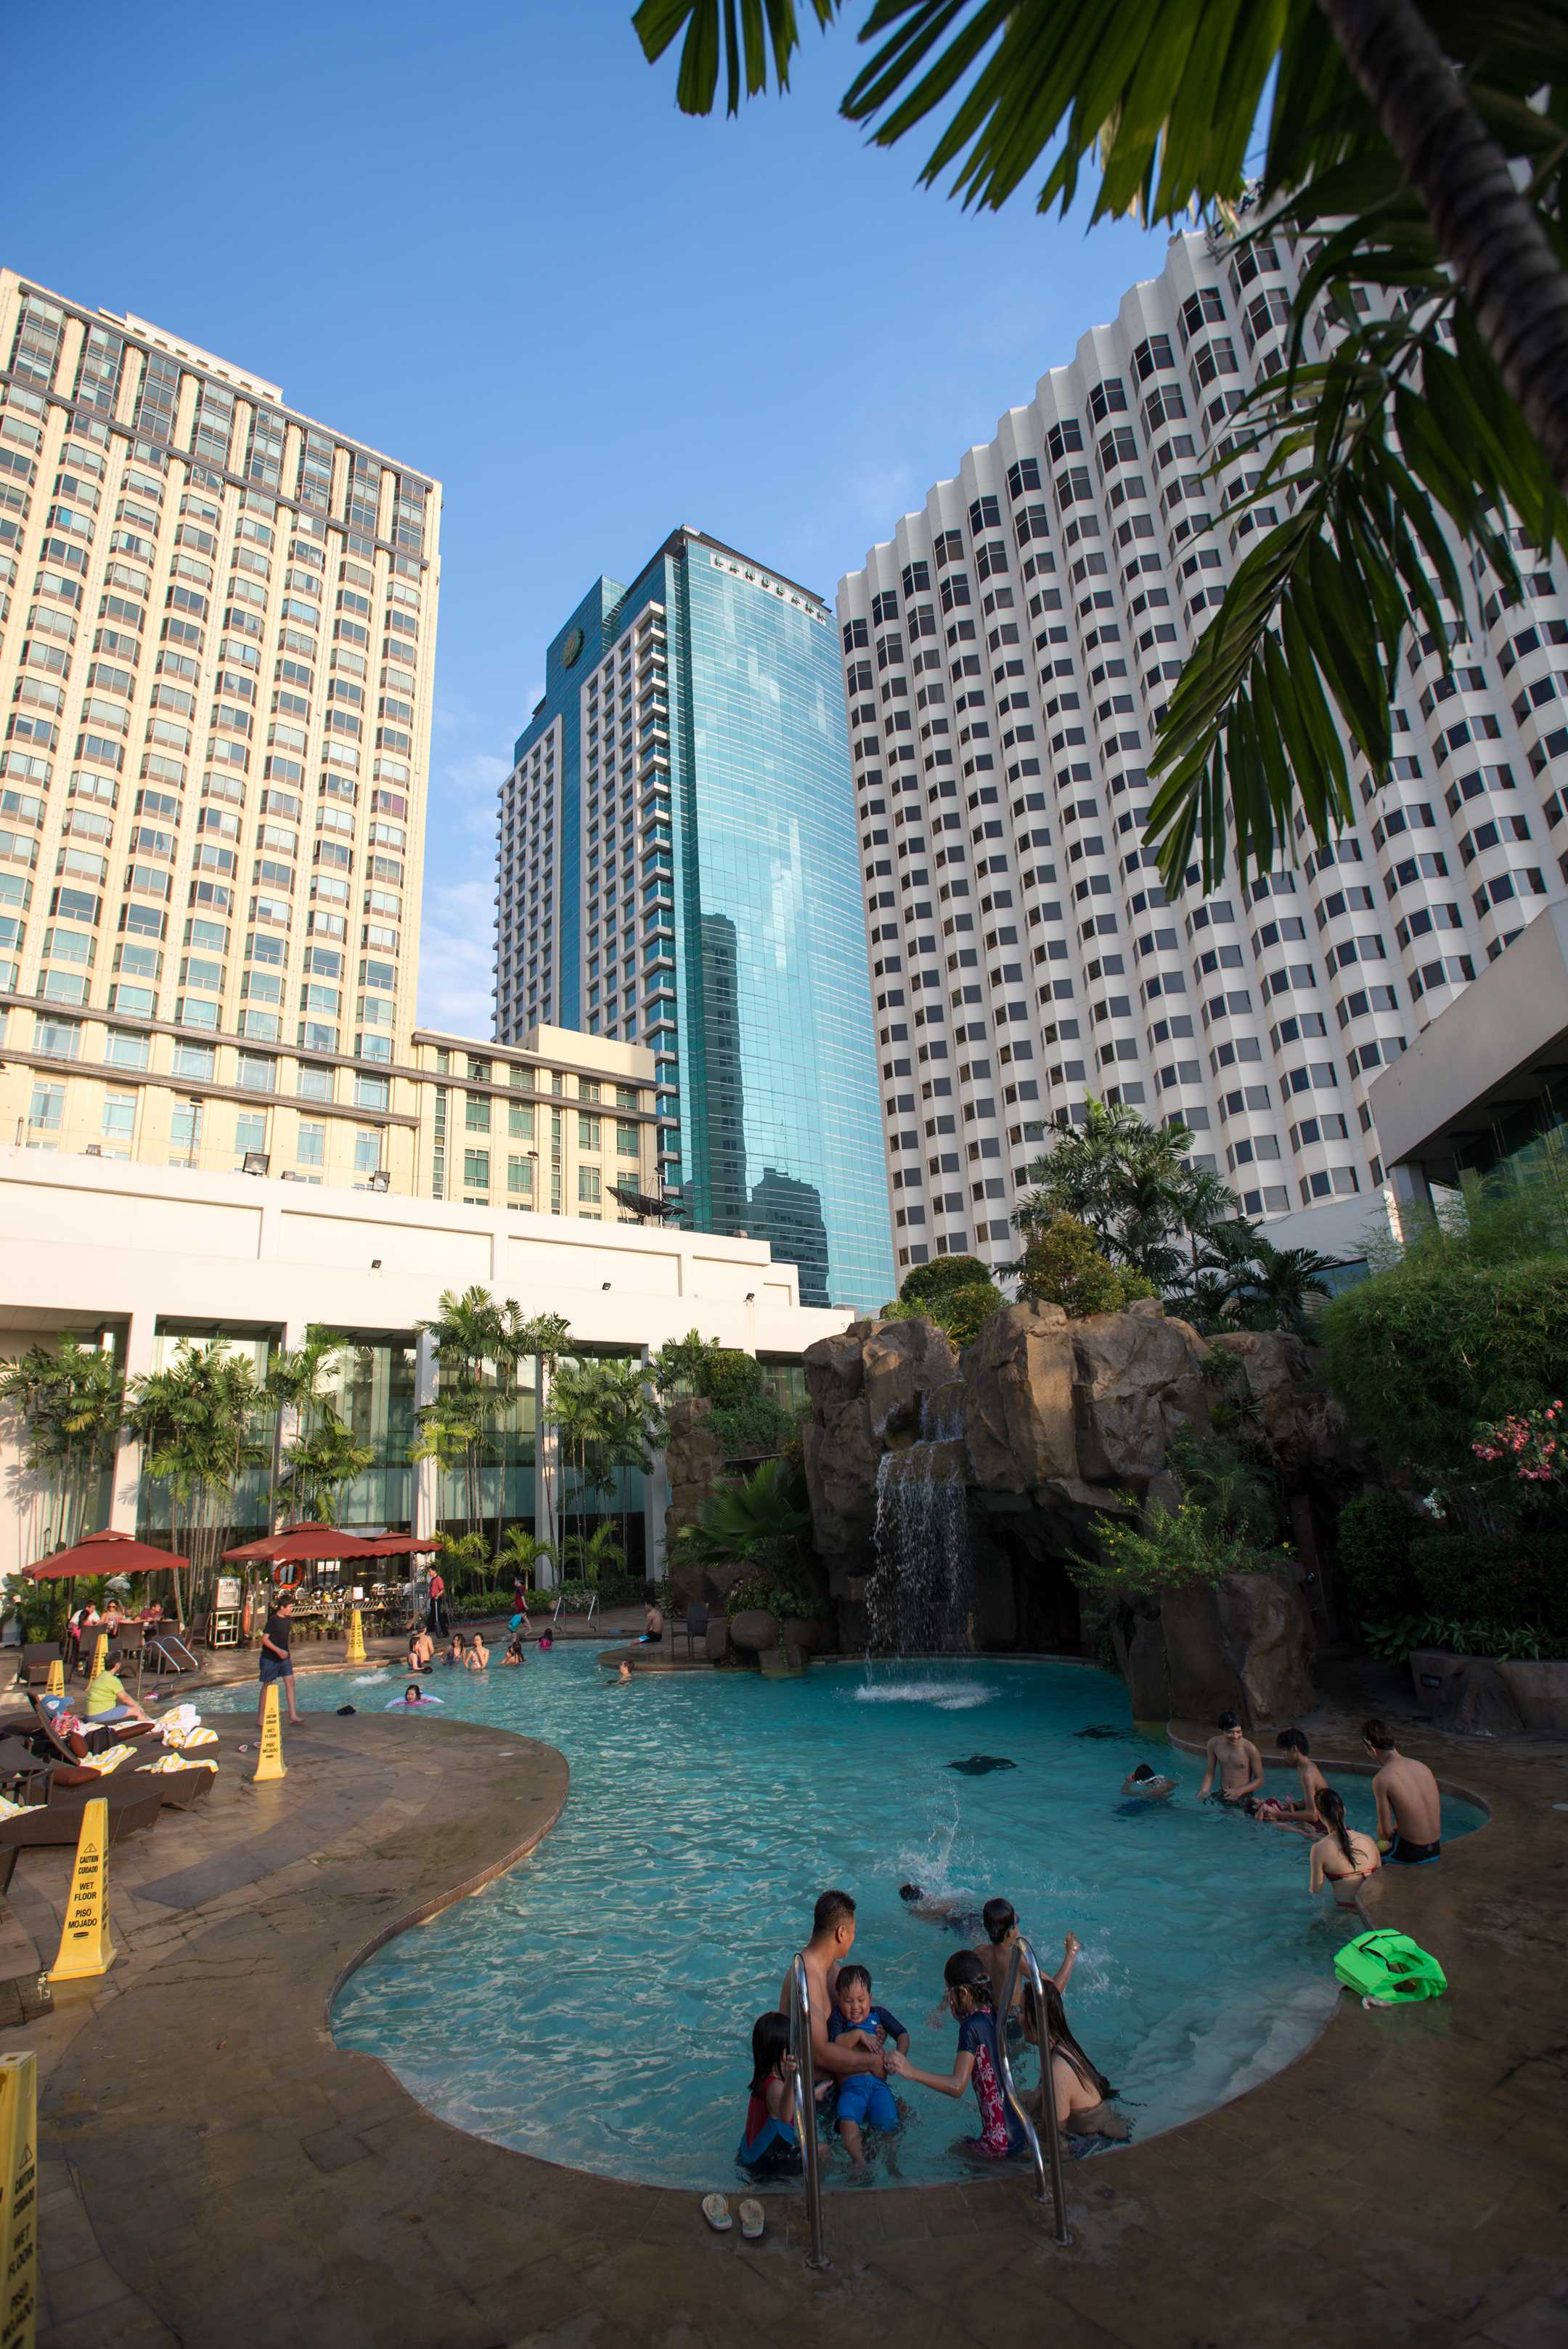 마닐라 다이아몬드 호텔(Manila Diamond Hotel) 수영장 - 2013.01.01